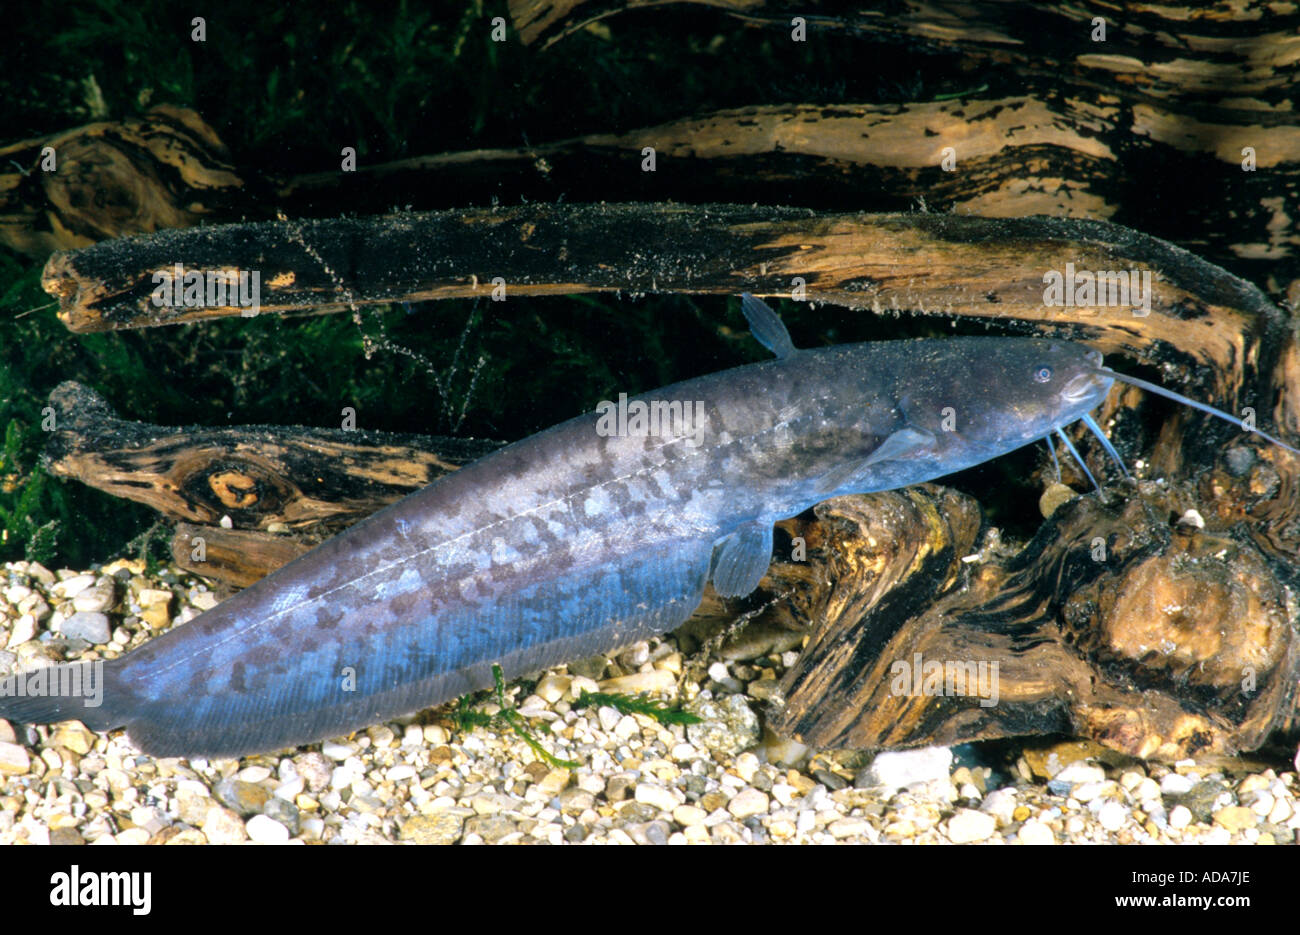 European catfish, wels, sheatfish, wels catfish (Silurus glanis), young animal on root, Germany, Bavaria Stock Photo